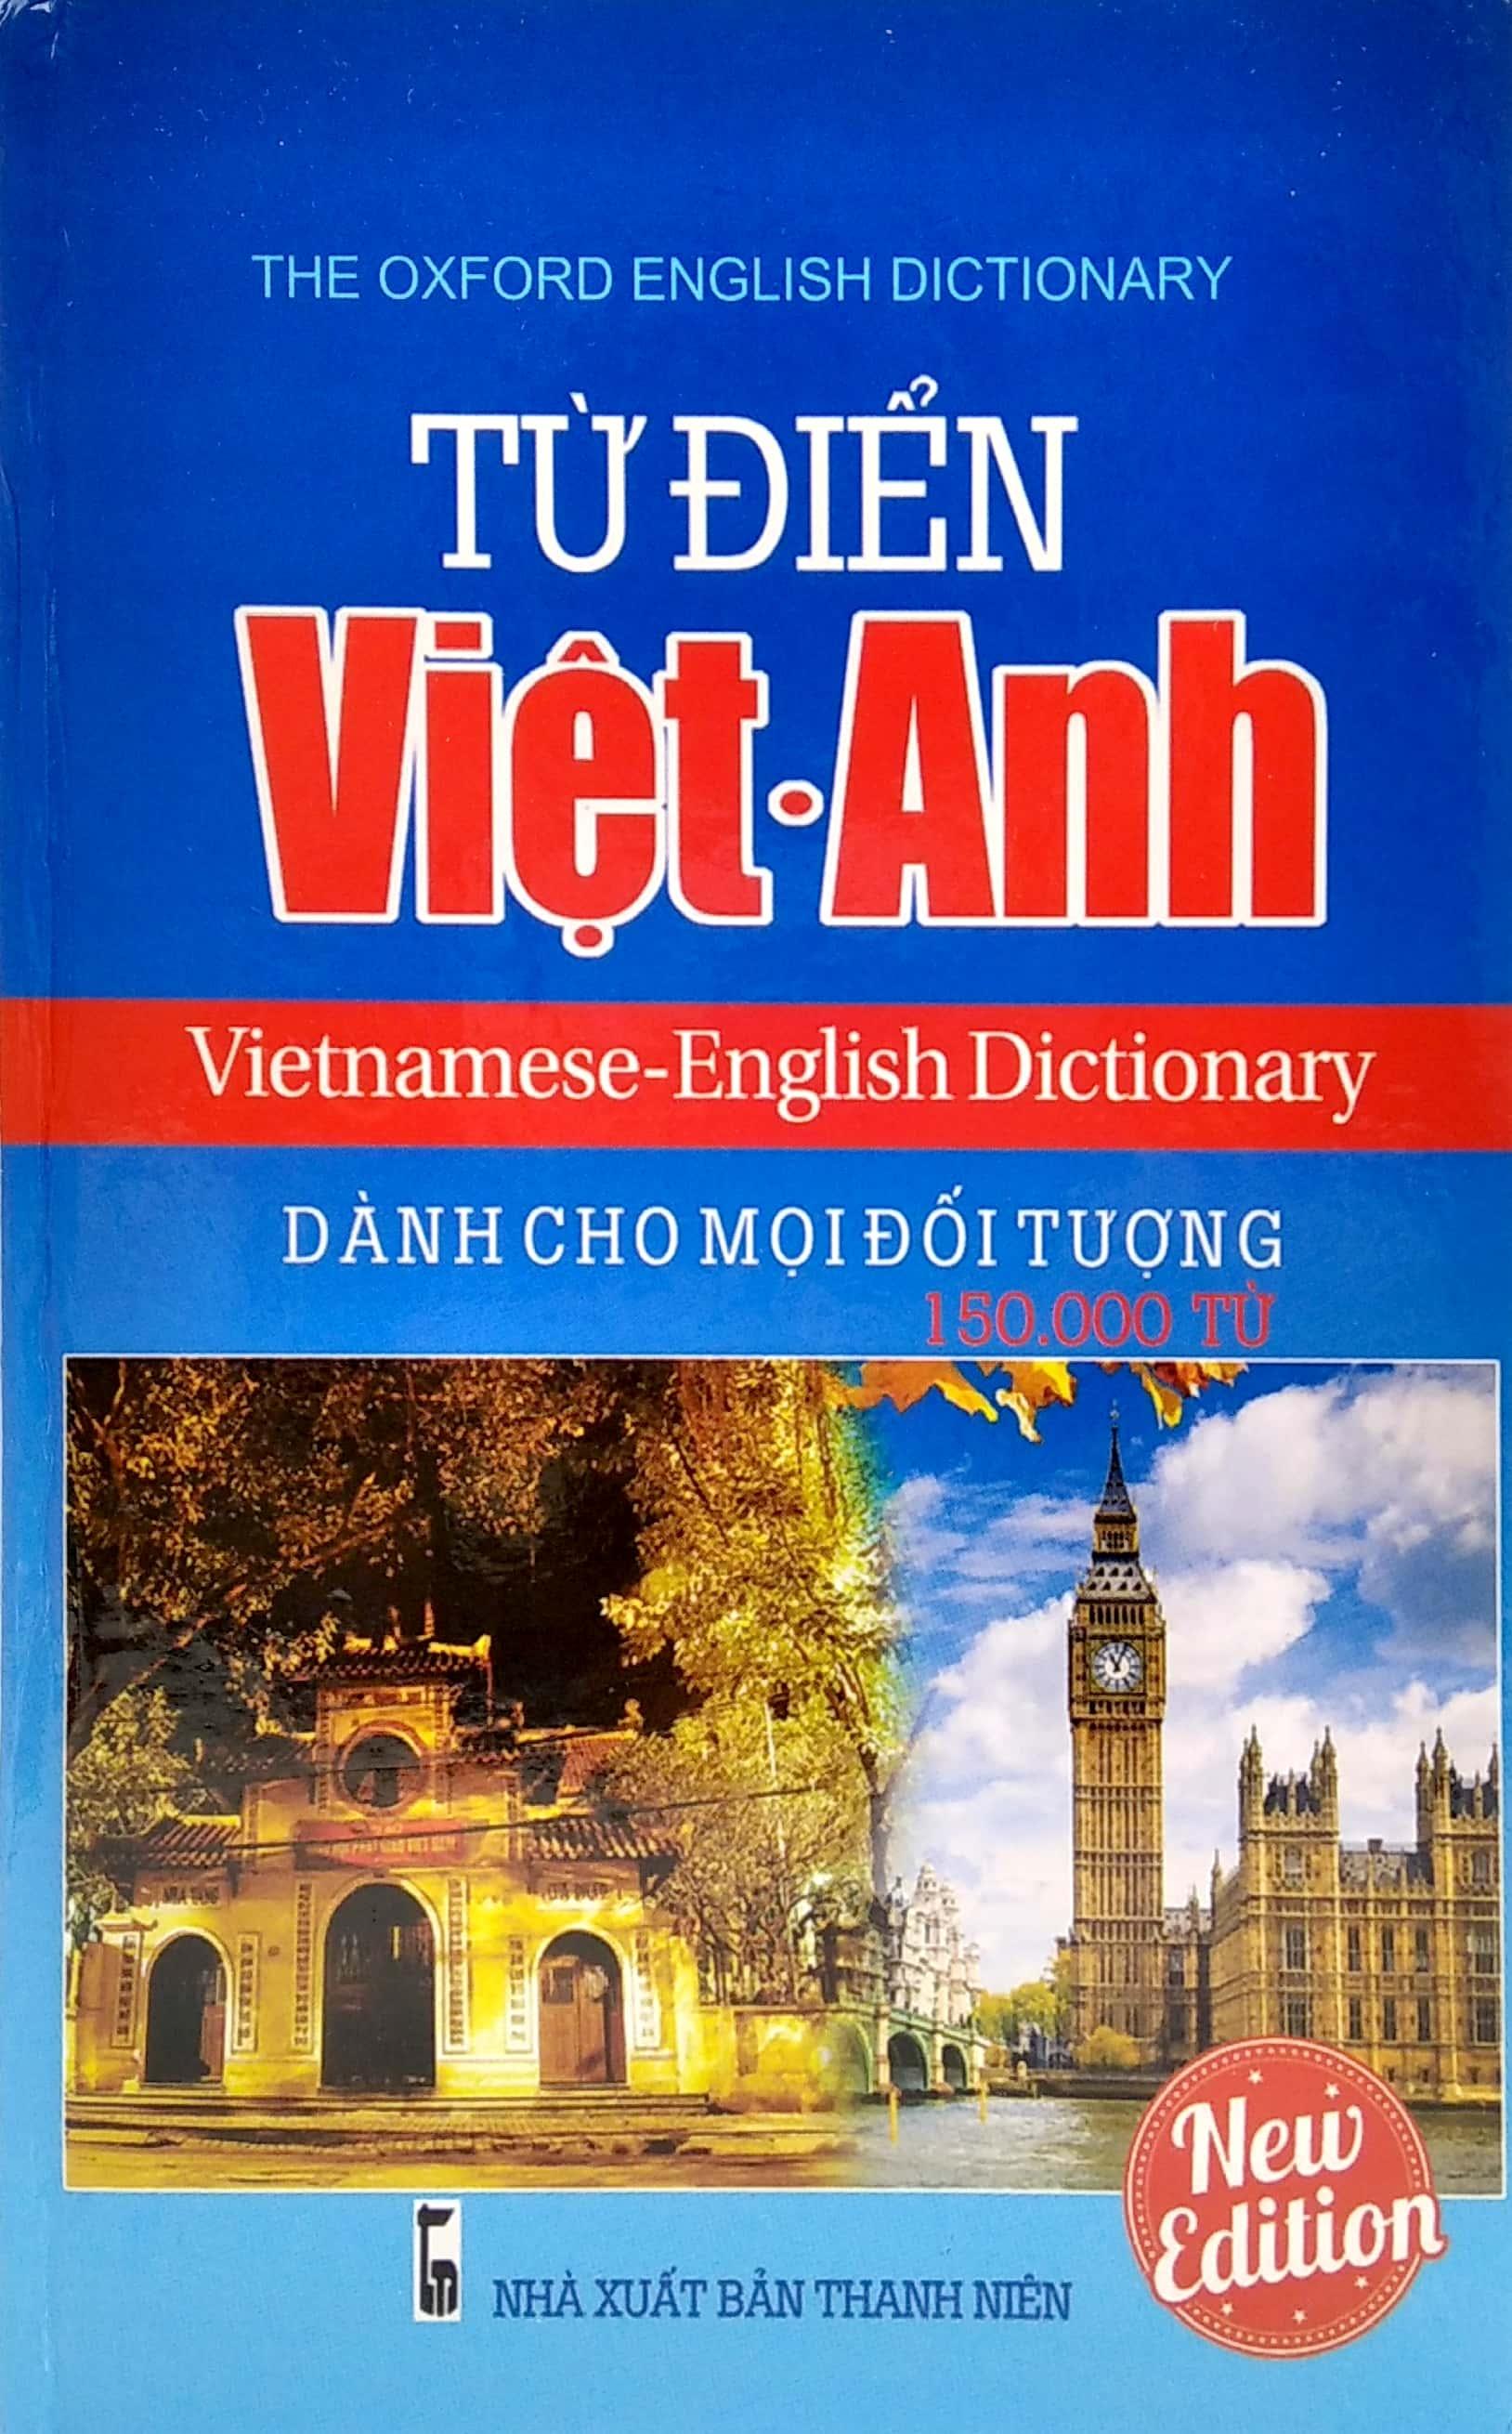 Từ Điển Việt - Anh Dành Cho Mọi Đối Tượng (150.000 Từ)